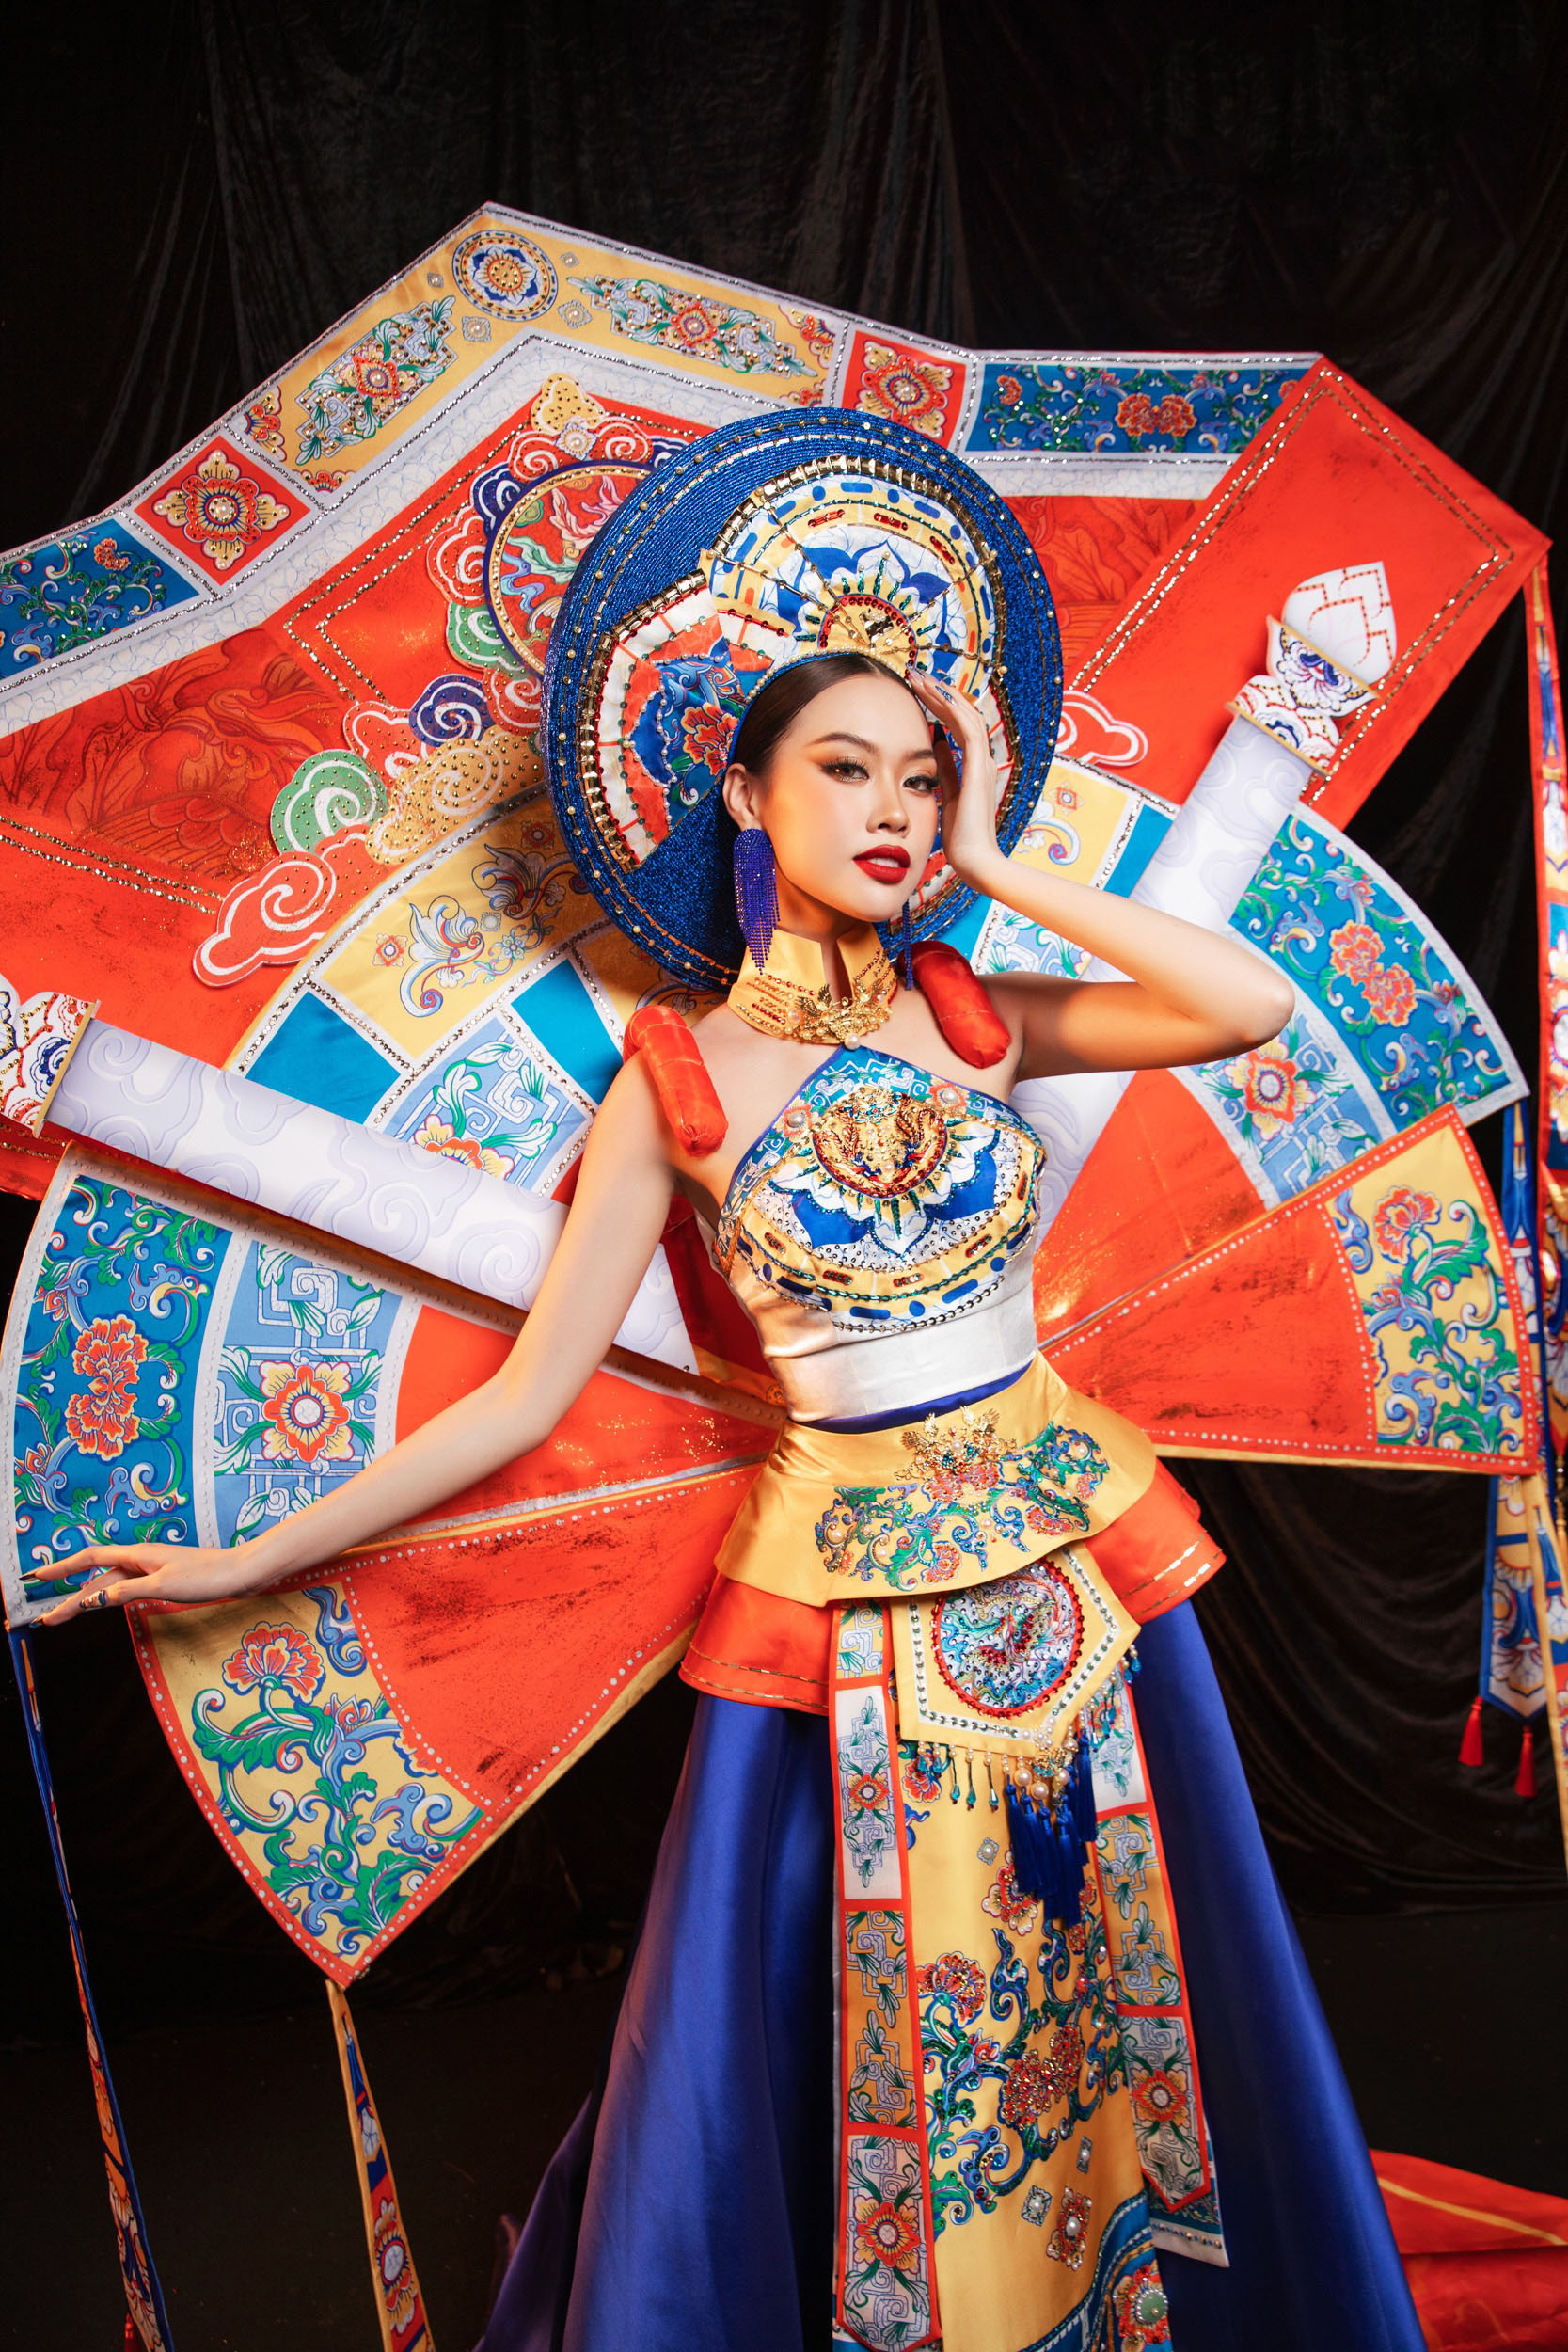 Đặng Hoàng Tâm Như trình diễn trang phục dân tộc lấy cảm hứng từ nghệ thuật Pháp lam Huế - 2